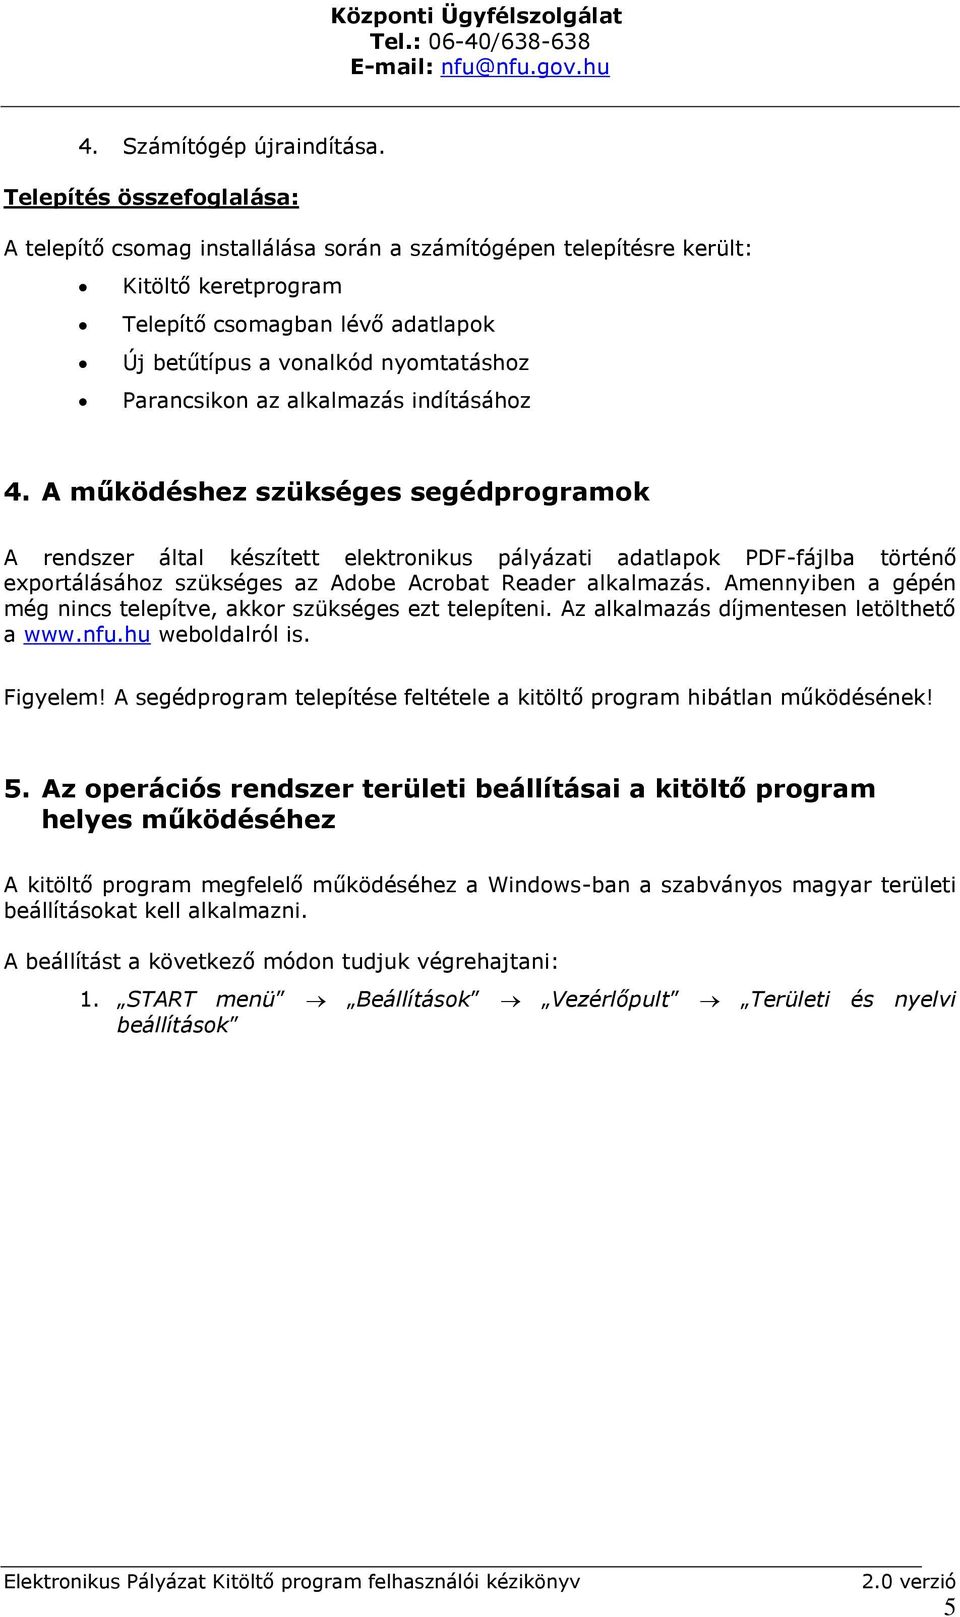 Elektronikus Pályázat Kitöltő program. Felhasználói kézikönyv PDF Ingyenes  letöltés